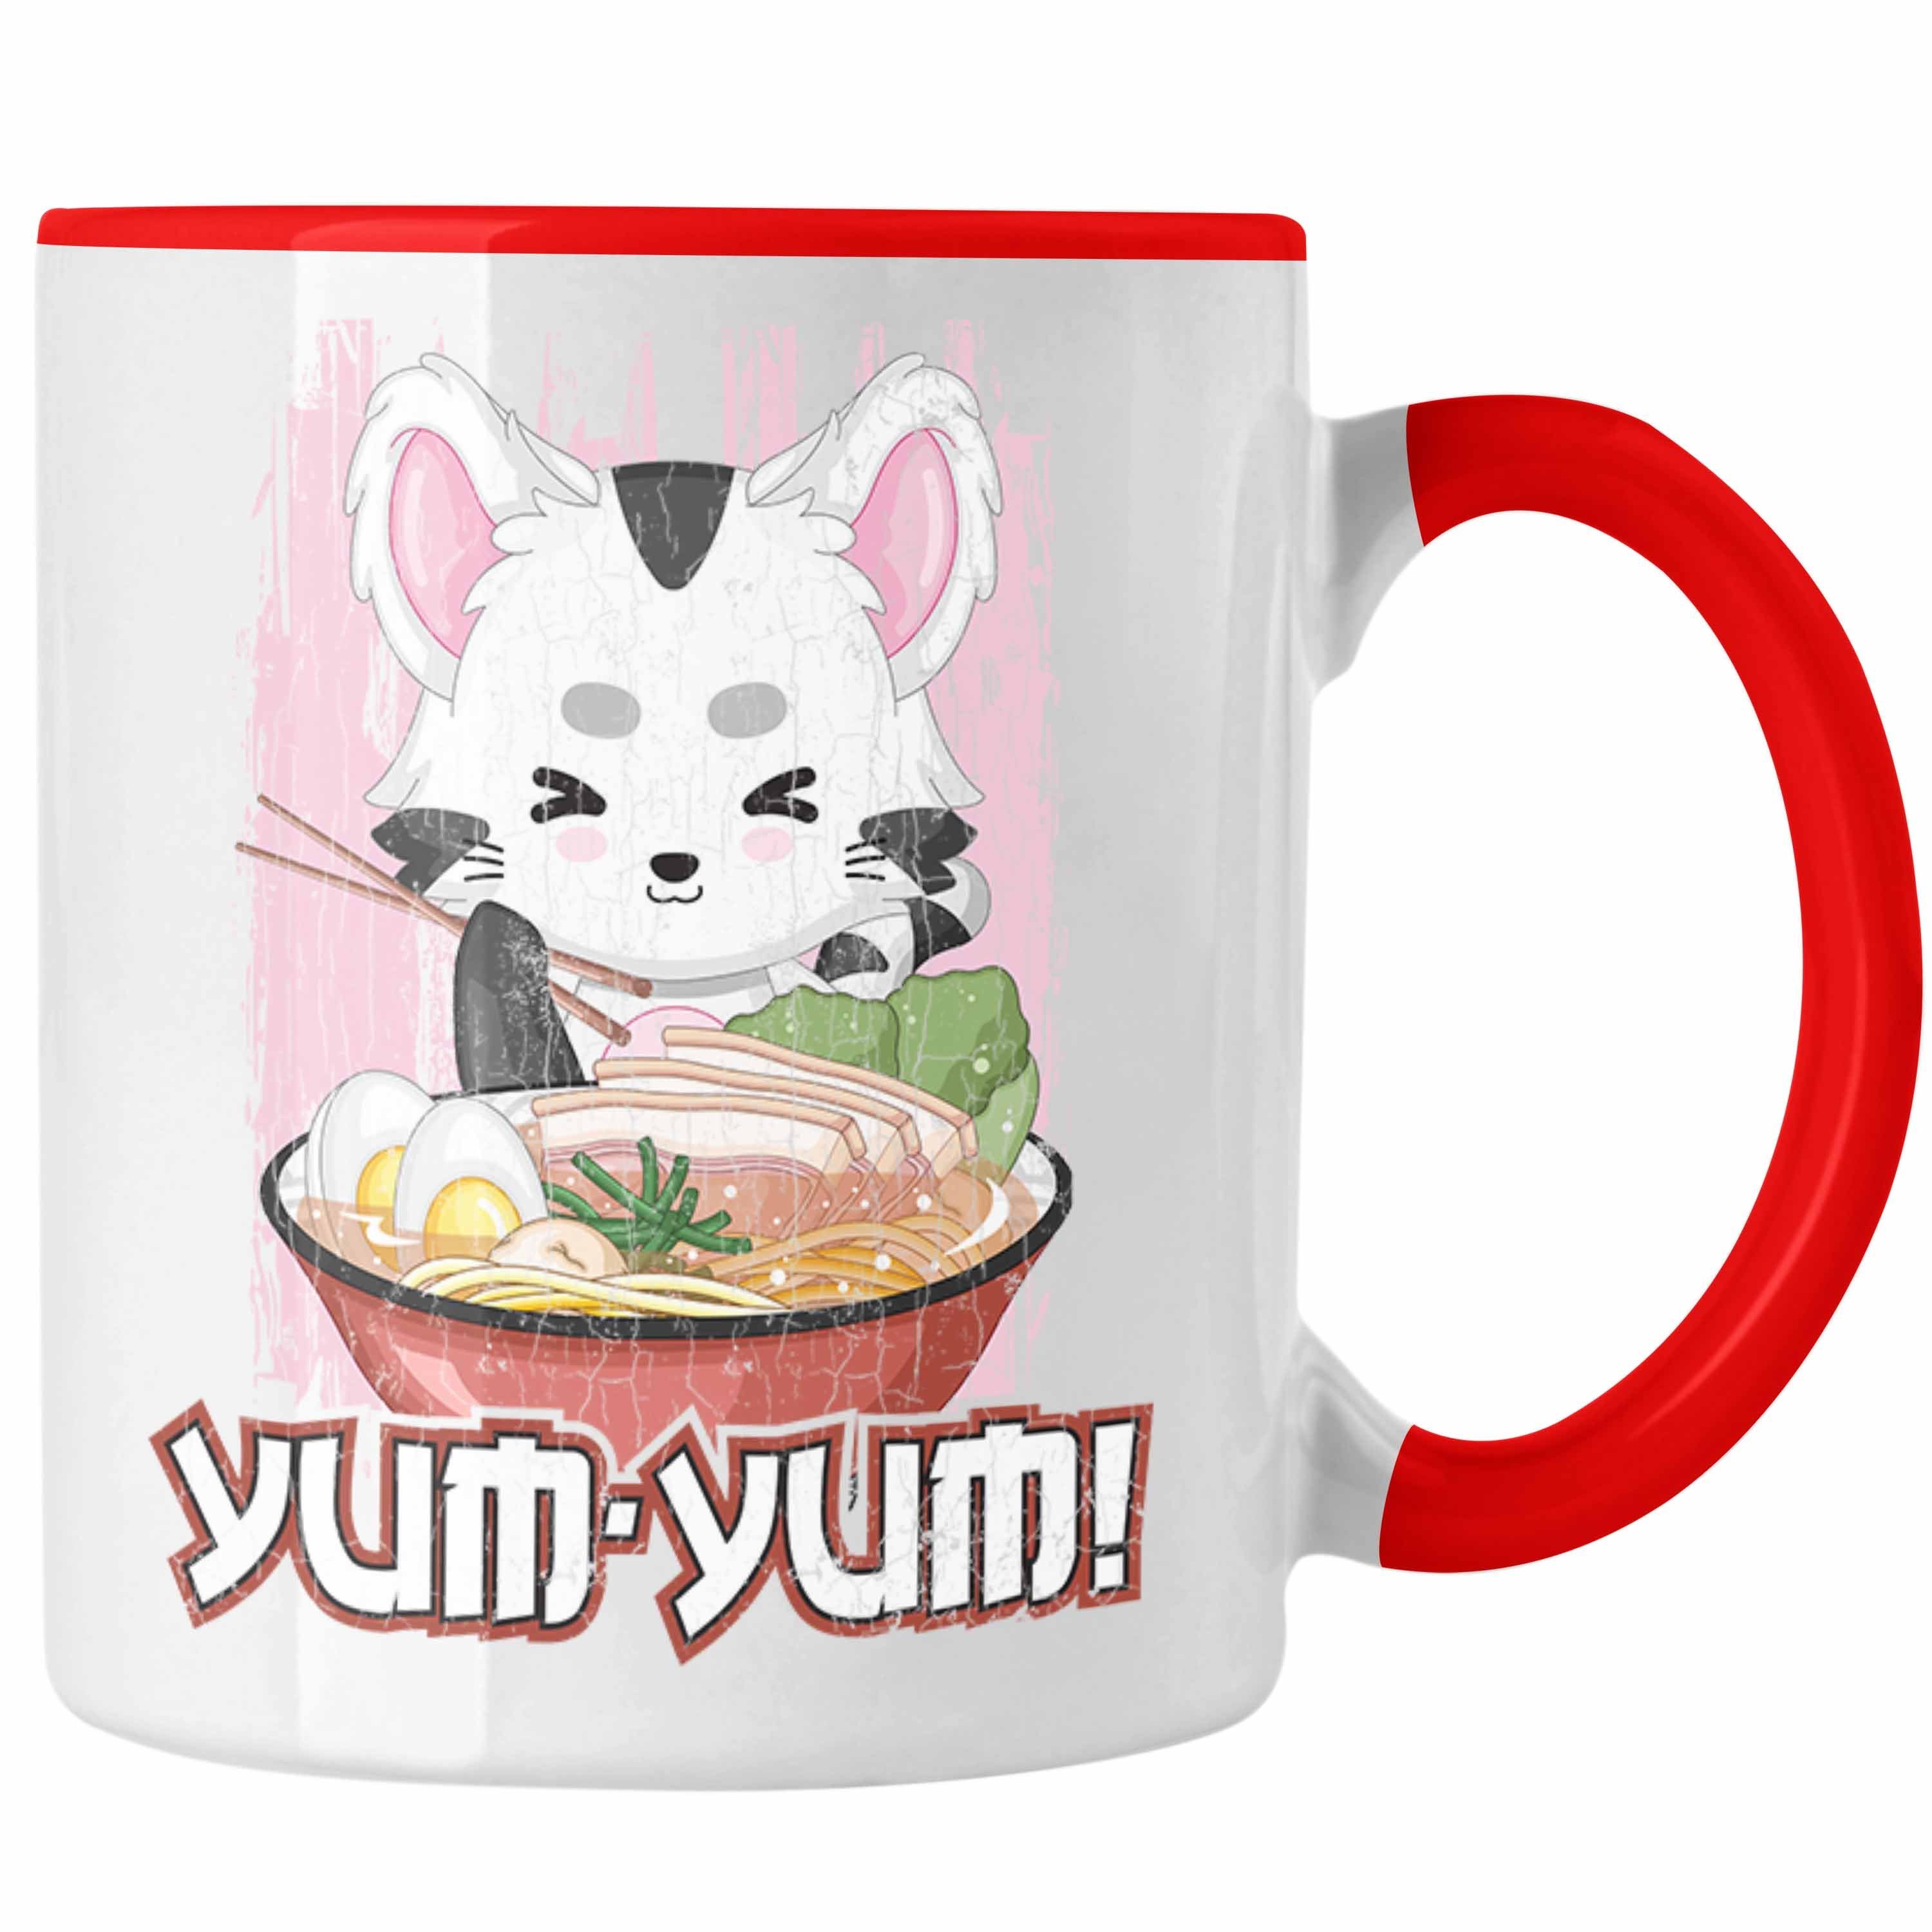 Anme - Fan Geschenk Deko Yum Spruch Geschenke Tasse Trendation Rot Anime Yum Tasse Kaffeetasse Trendation